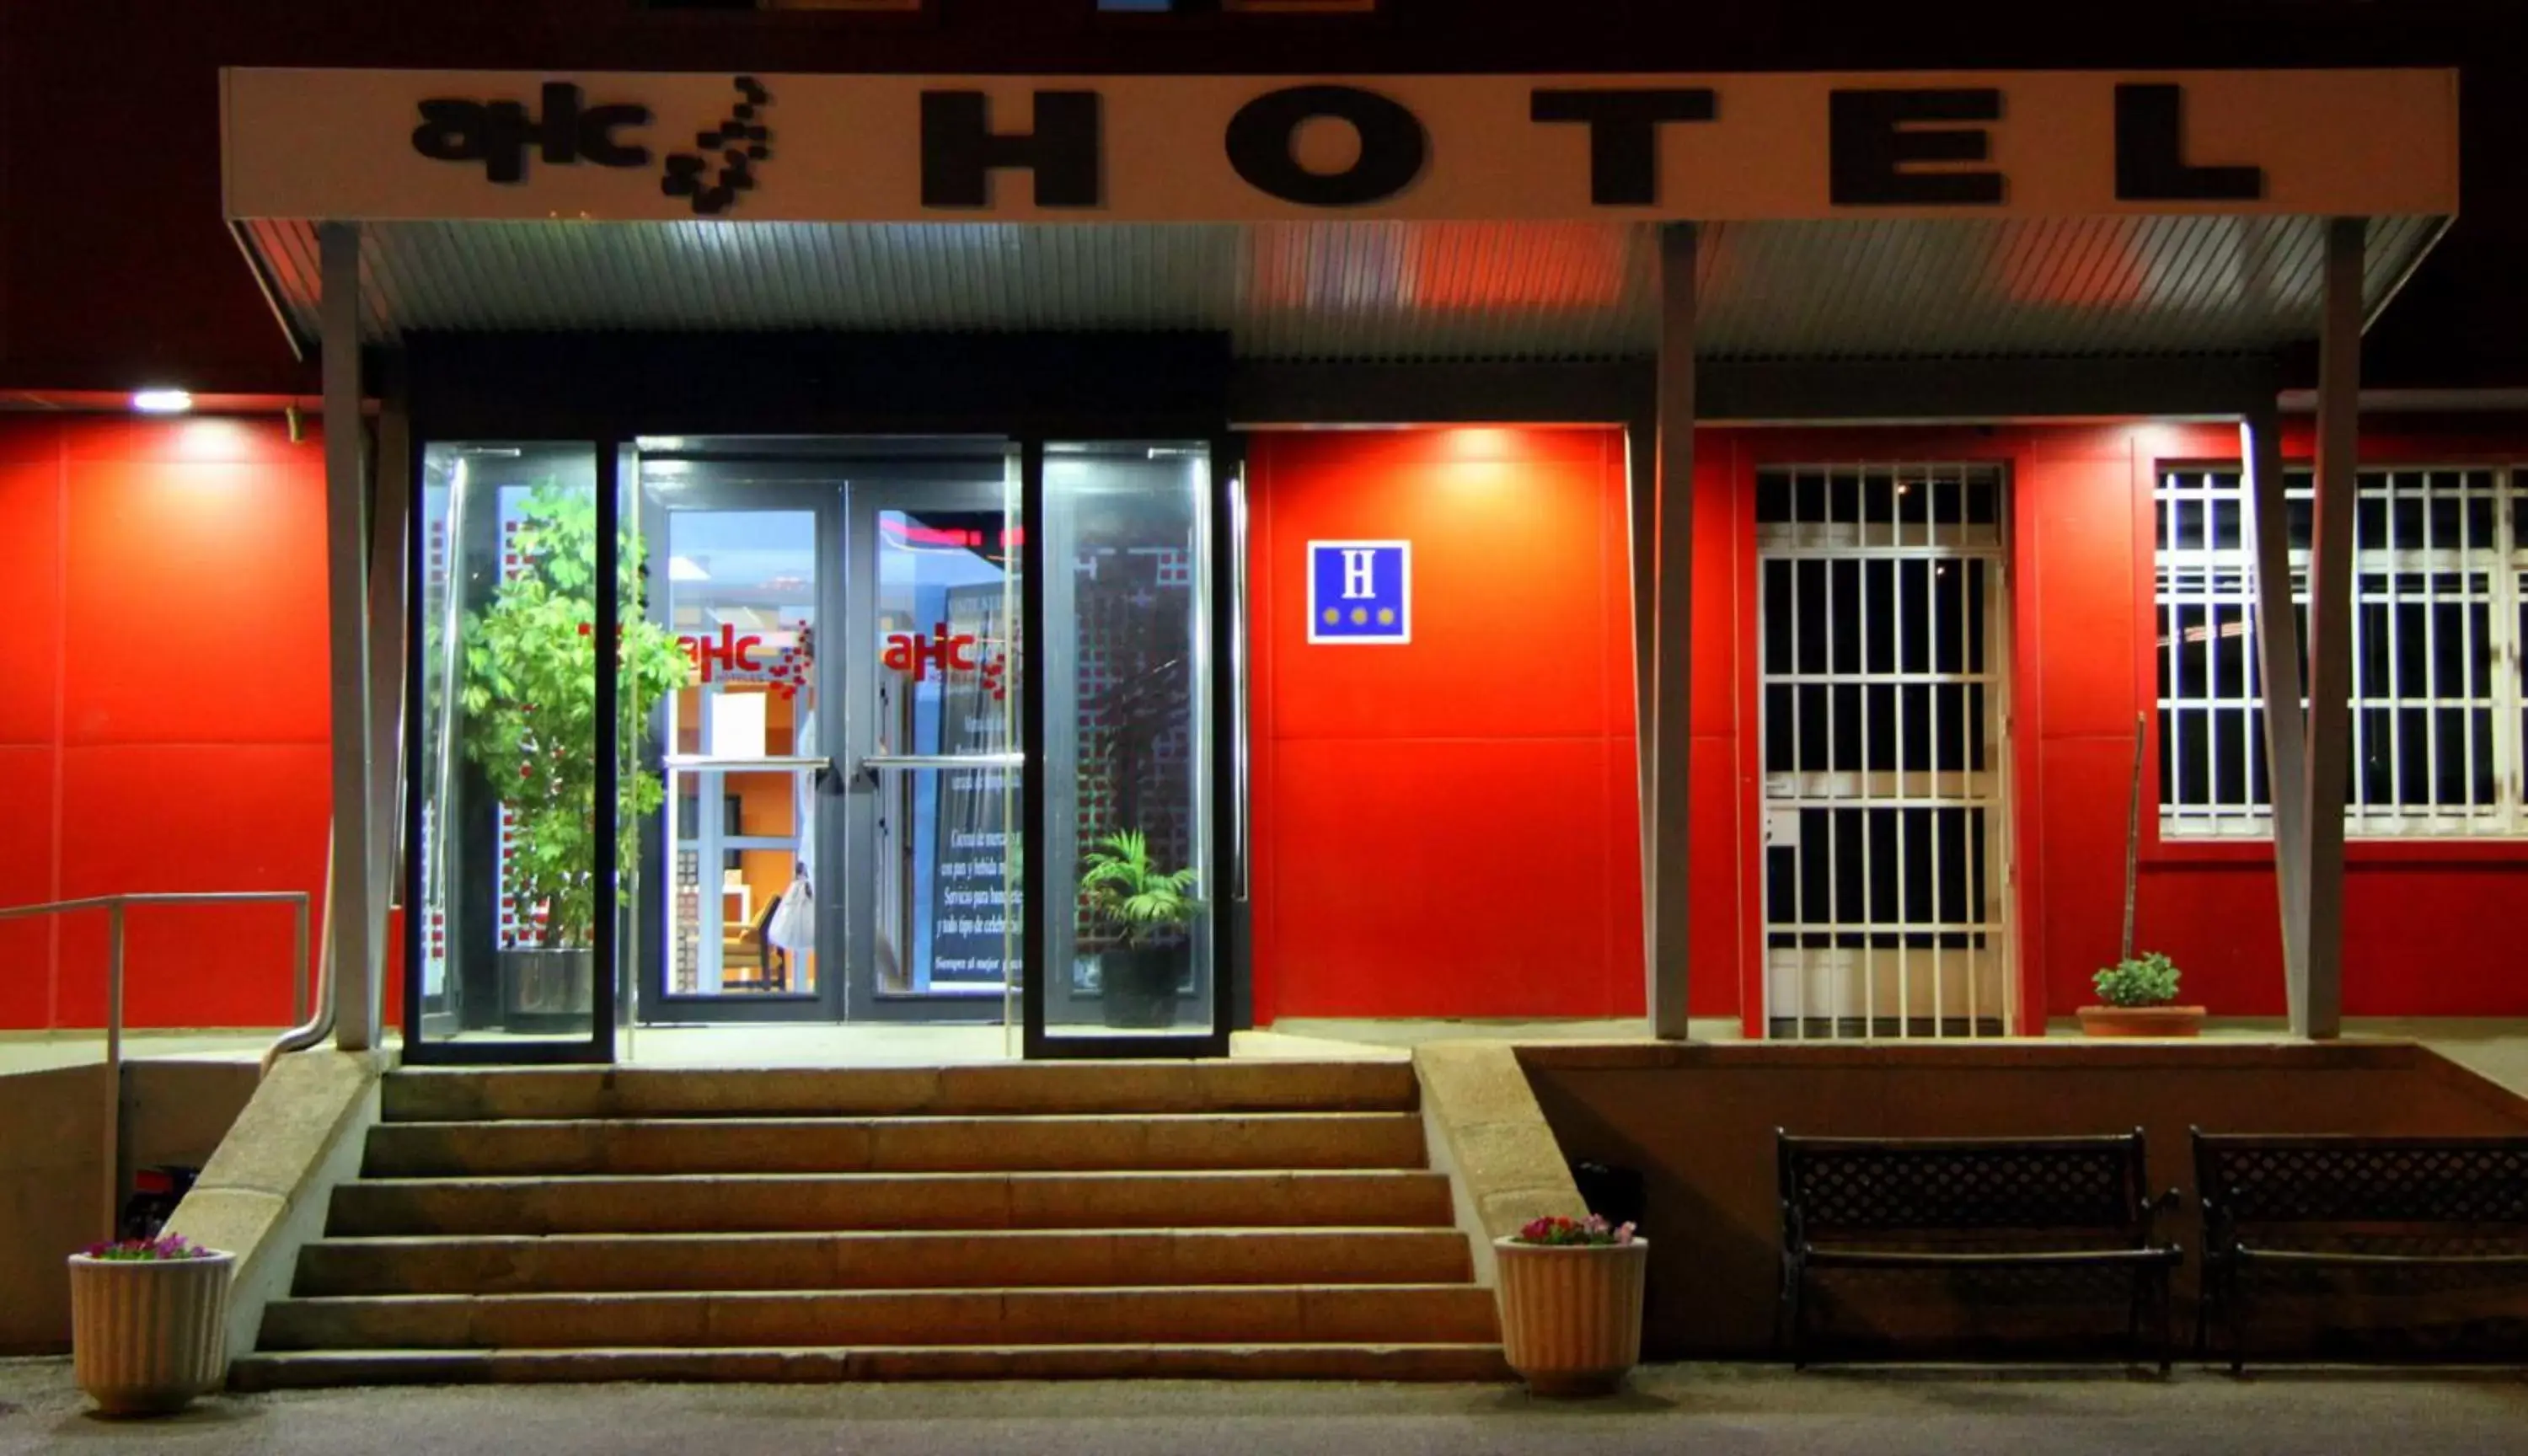 Facade/entrance in AHC Hoteles